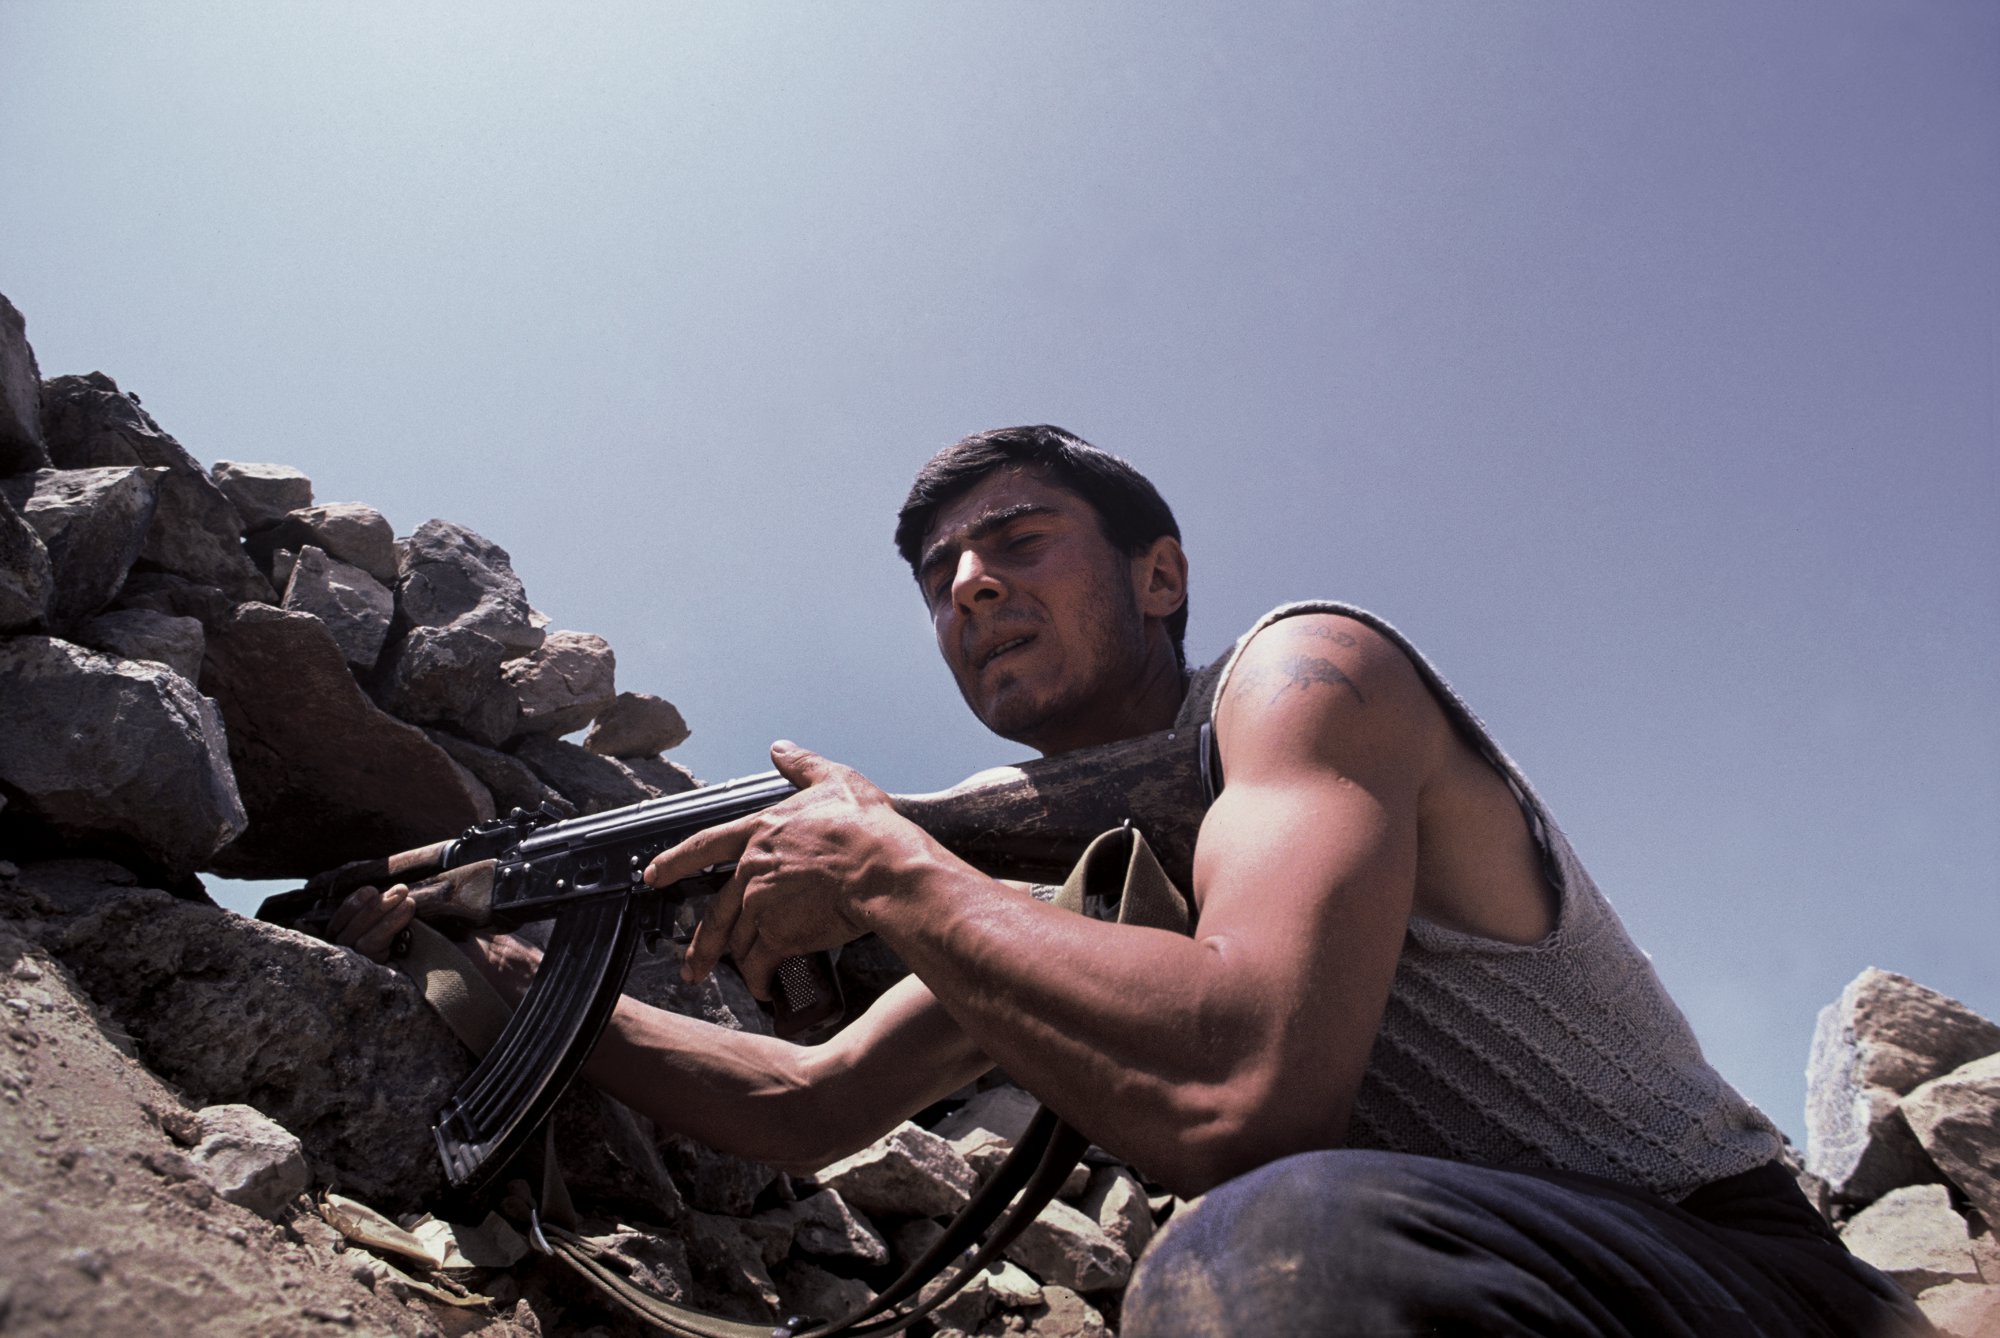  Trench Warfare,&nbsp;Nagorno-Karabakh War. 1992 